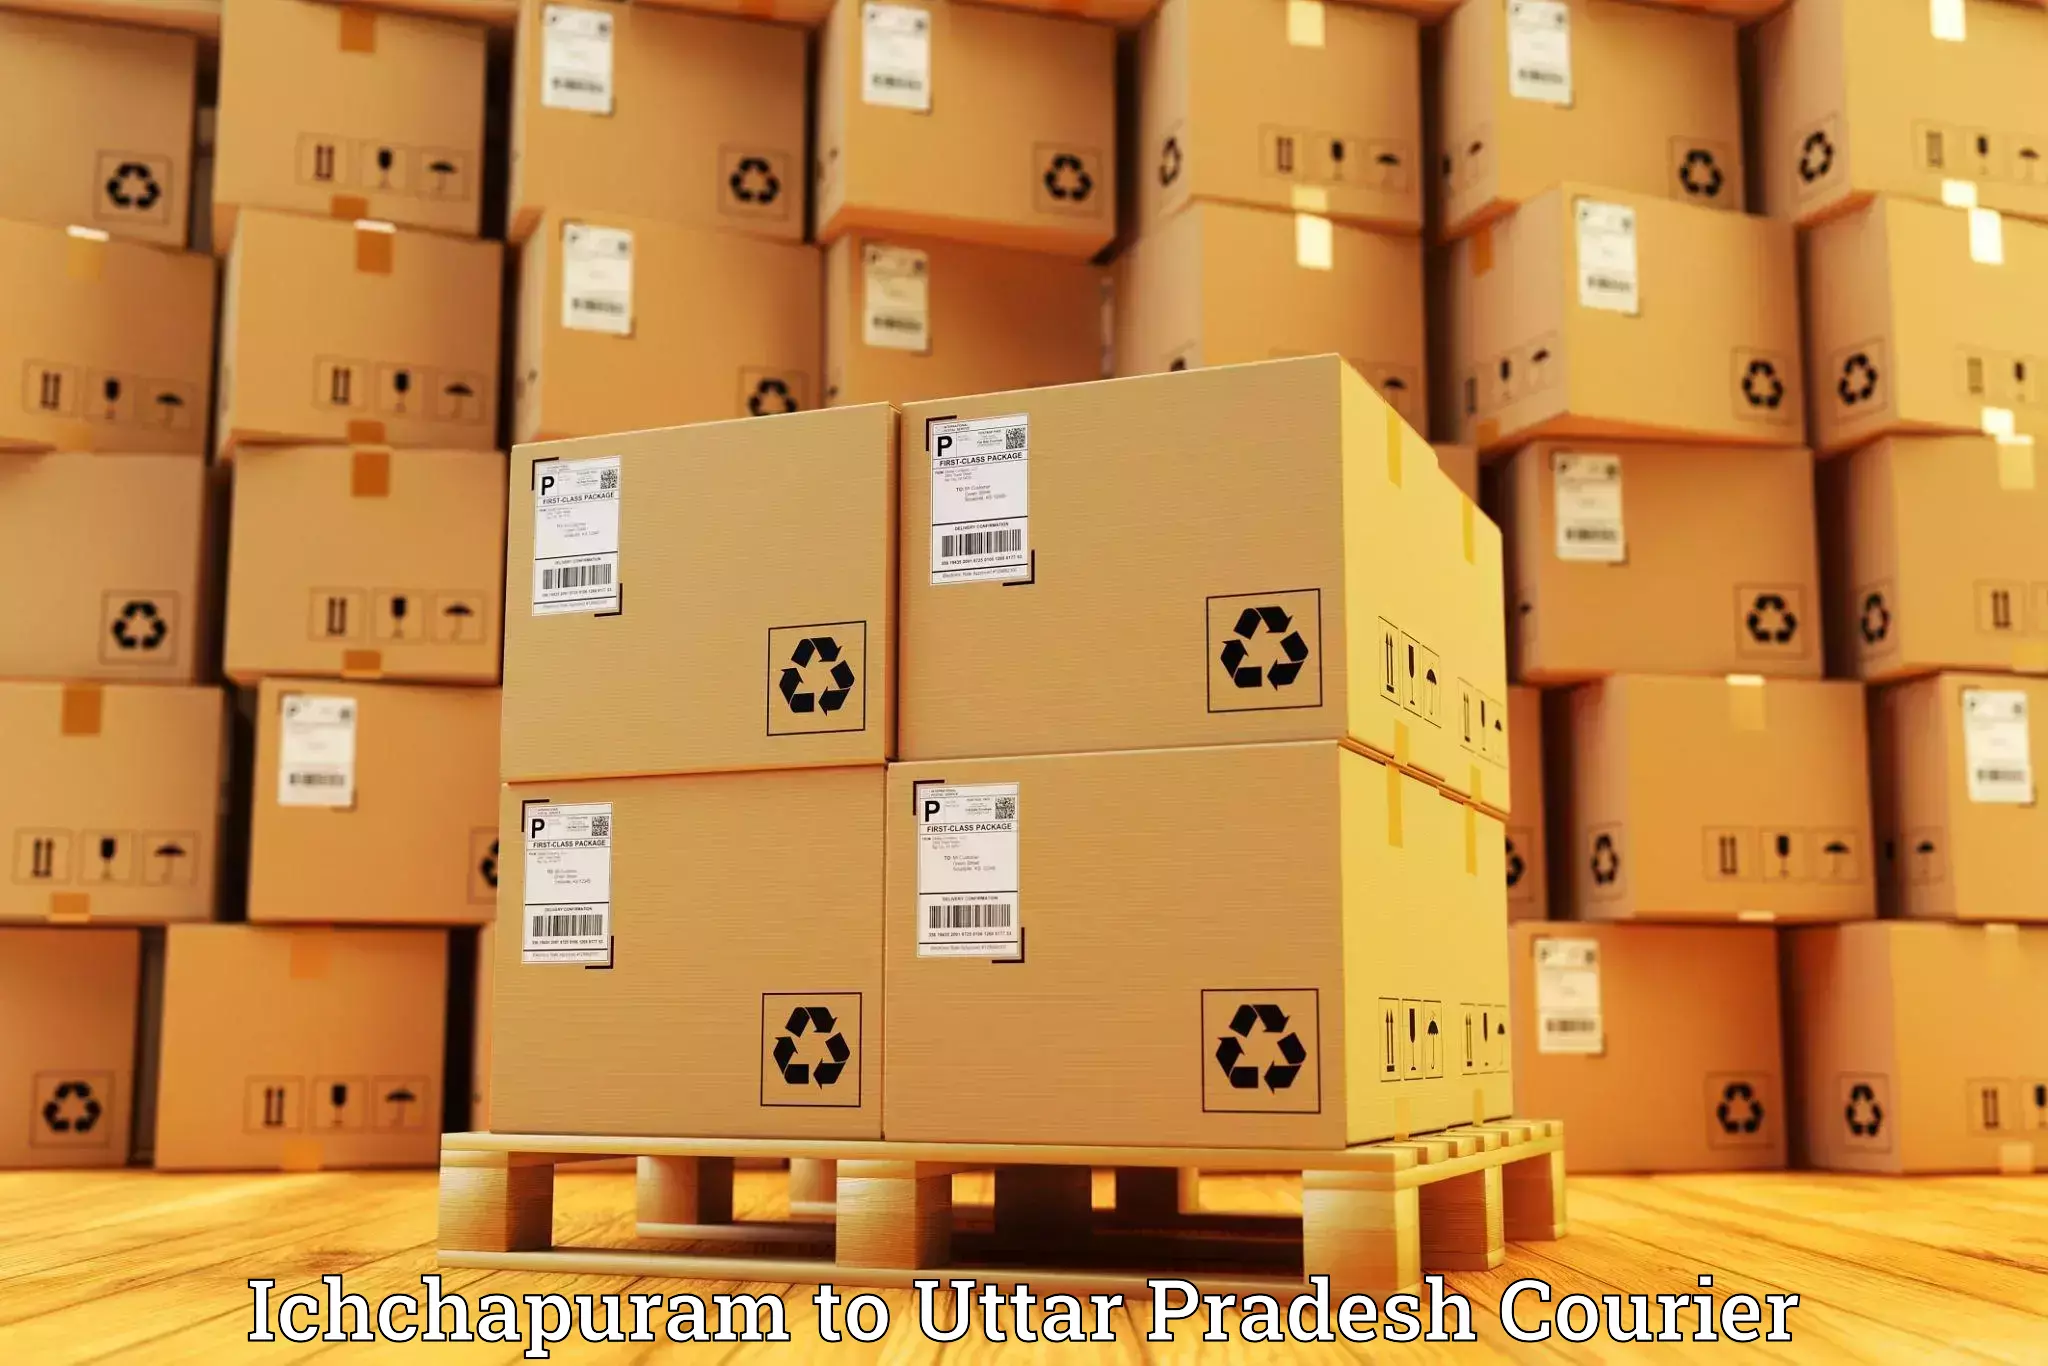 Cost-effective courier solutions Ichchapuram to Sarai Meer